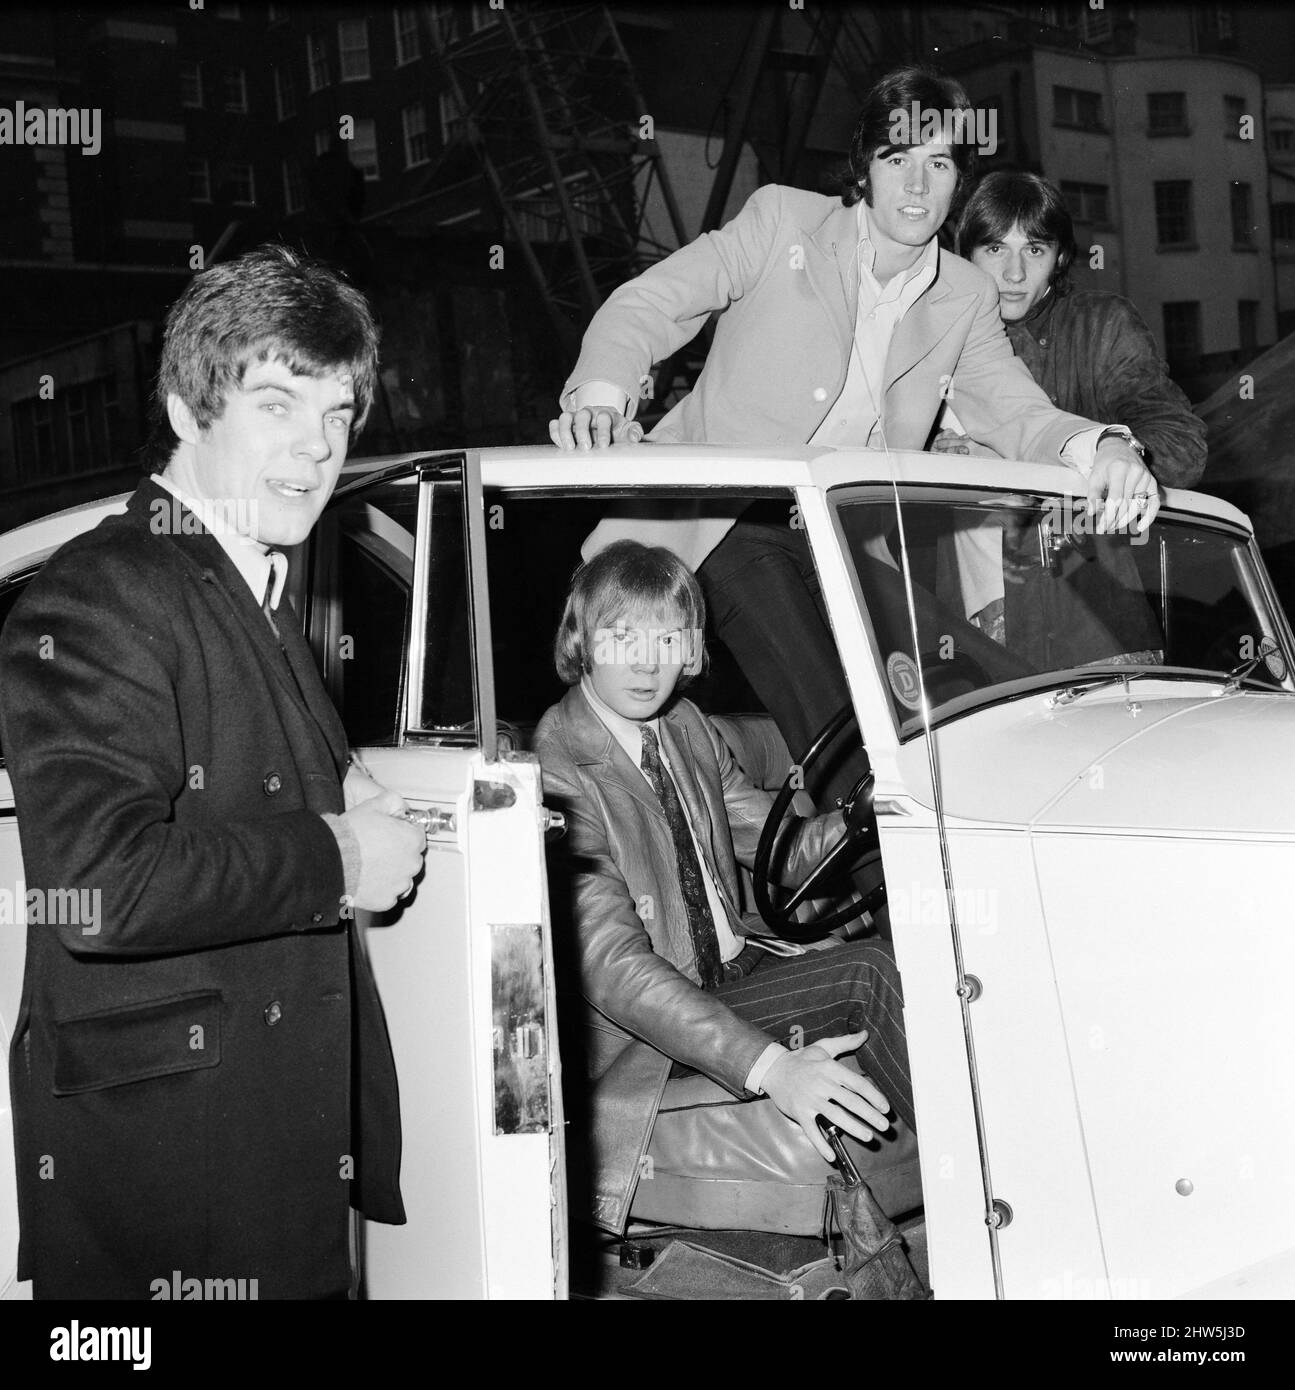 Les Bee Gees examinent un cadeau de Noël de l'agent Robert Stigwood, un 1948 Rolls Royce Silver Wraith, 12th décembre 1967. La voiture a été offerte comme cadeau spécial pour marquer et célébrer les 1 millions de ventes record de leur seul Massachusetts. Quatre des cinq membres du groupe regardent la voiture et lui donnent un vernis et propre. M. Stigwood a eu la voiture entièrement retapissée et peinte, et le moteur a été remis en état. Photo : Colin Peterson, Vince Melouney, Barry Gibb et Robin Gibb dans Adams Row, Mayfair (Robin Gibb n'était pas disponible pour la photo) Banque D'Images